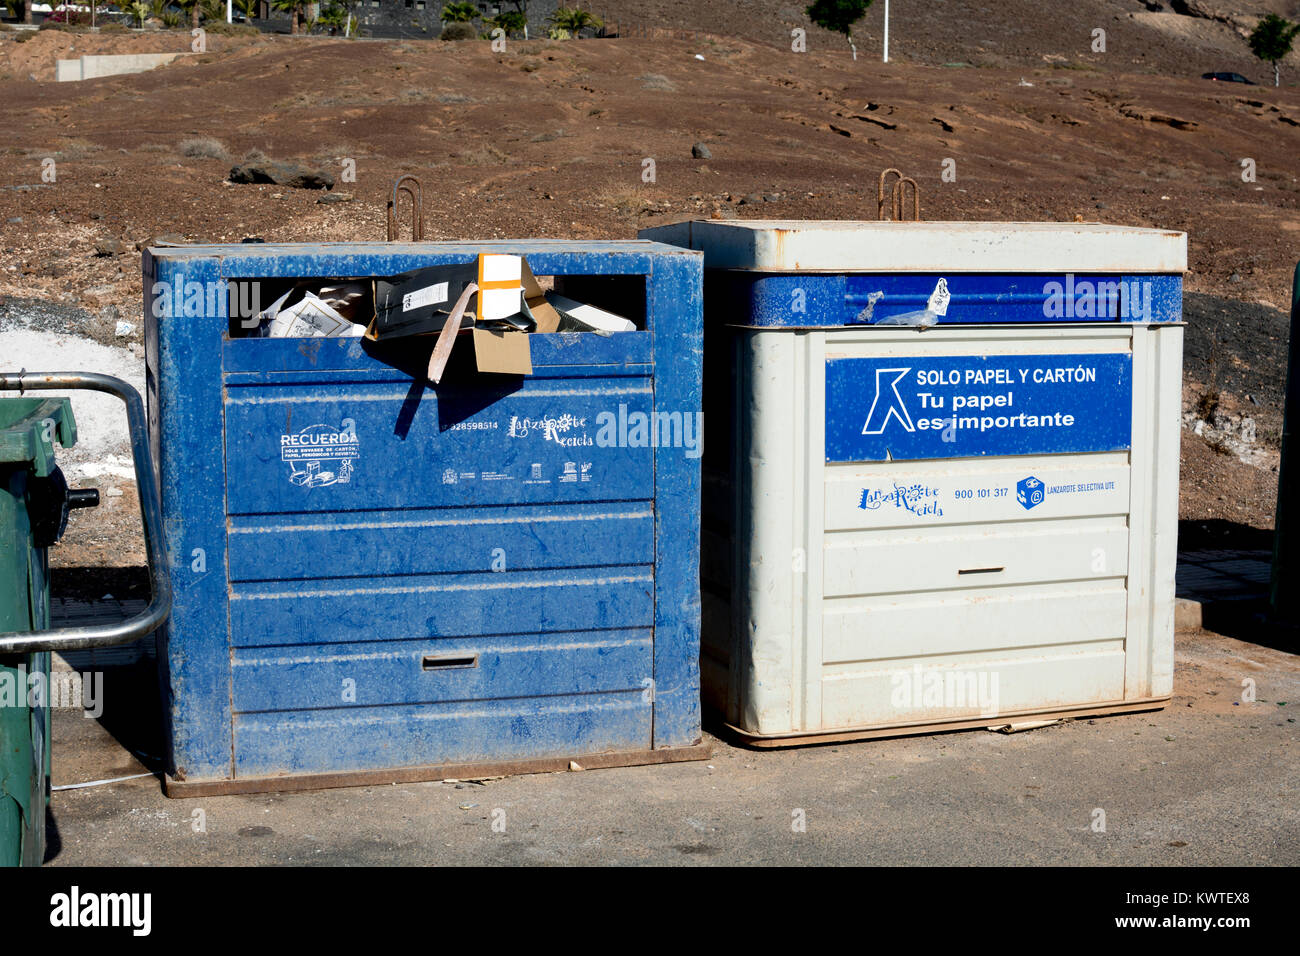 Öffentliche Papier und Karton Recycling Bins, Playa Blanca, Lanzarote, Kanarische Inseln, Spanien. Stockfoto